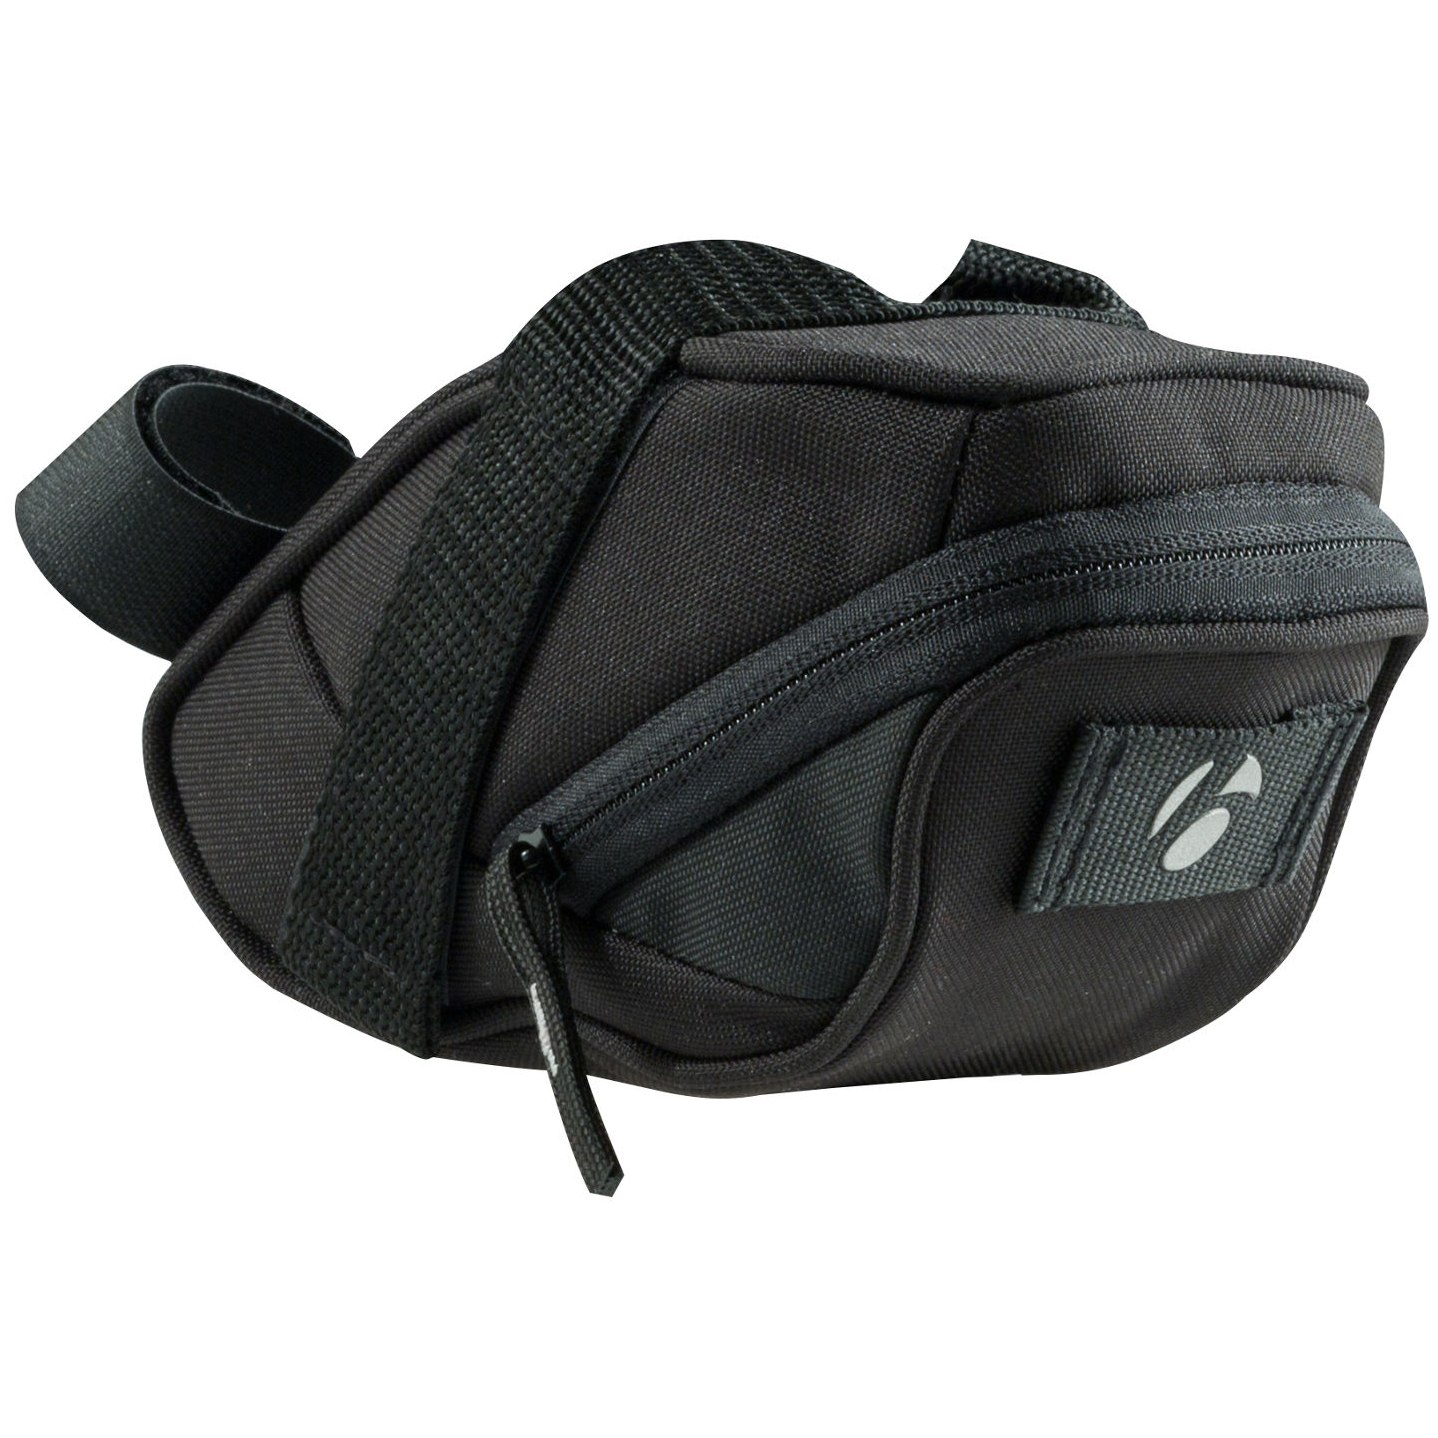 Image of Bontrager Comp Medium Seat Pack - black